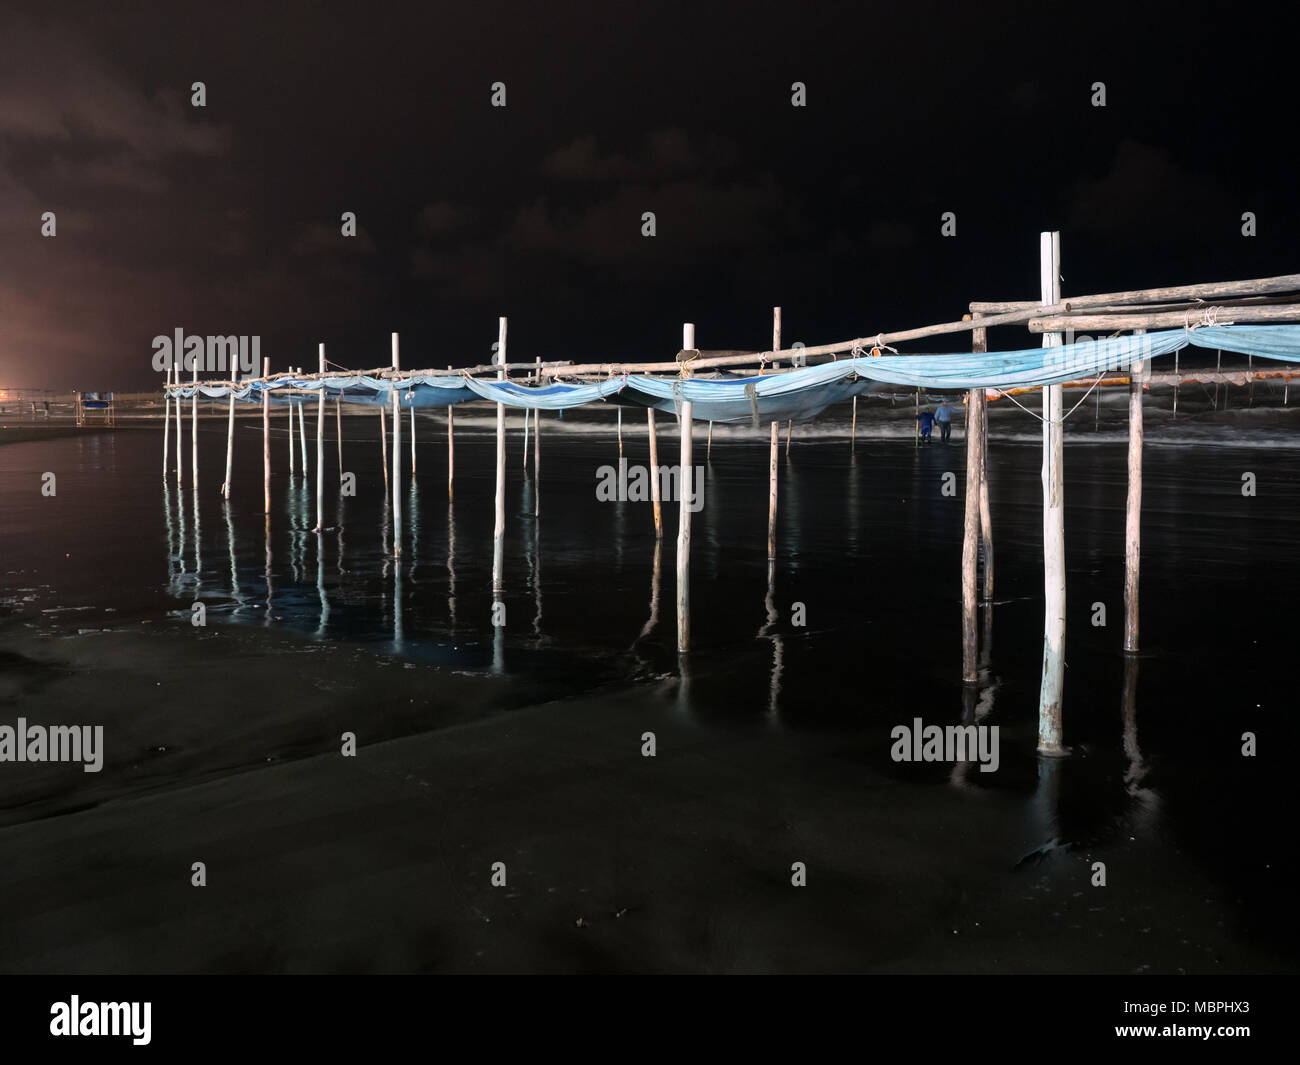 Vista notturna della struttura in legno utilizzati per separare le donne dagli uomini nel Mar Caspio, secondo regole islamiche. Babolsar, Iran Foto Stock